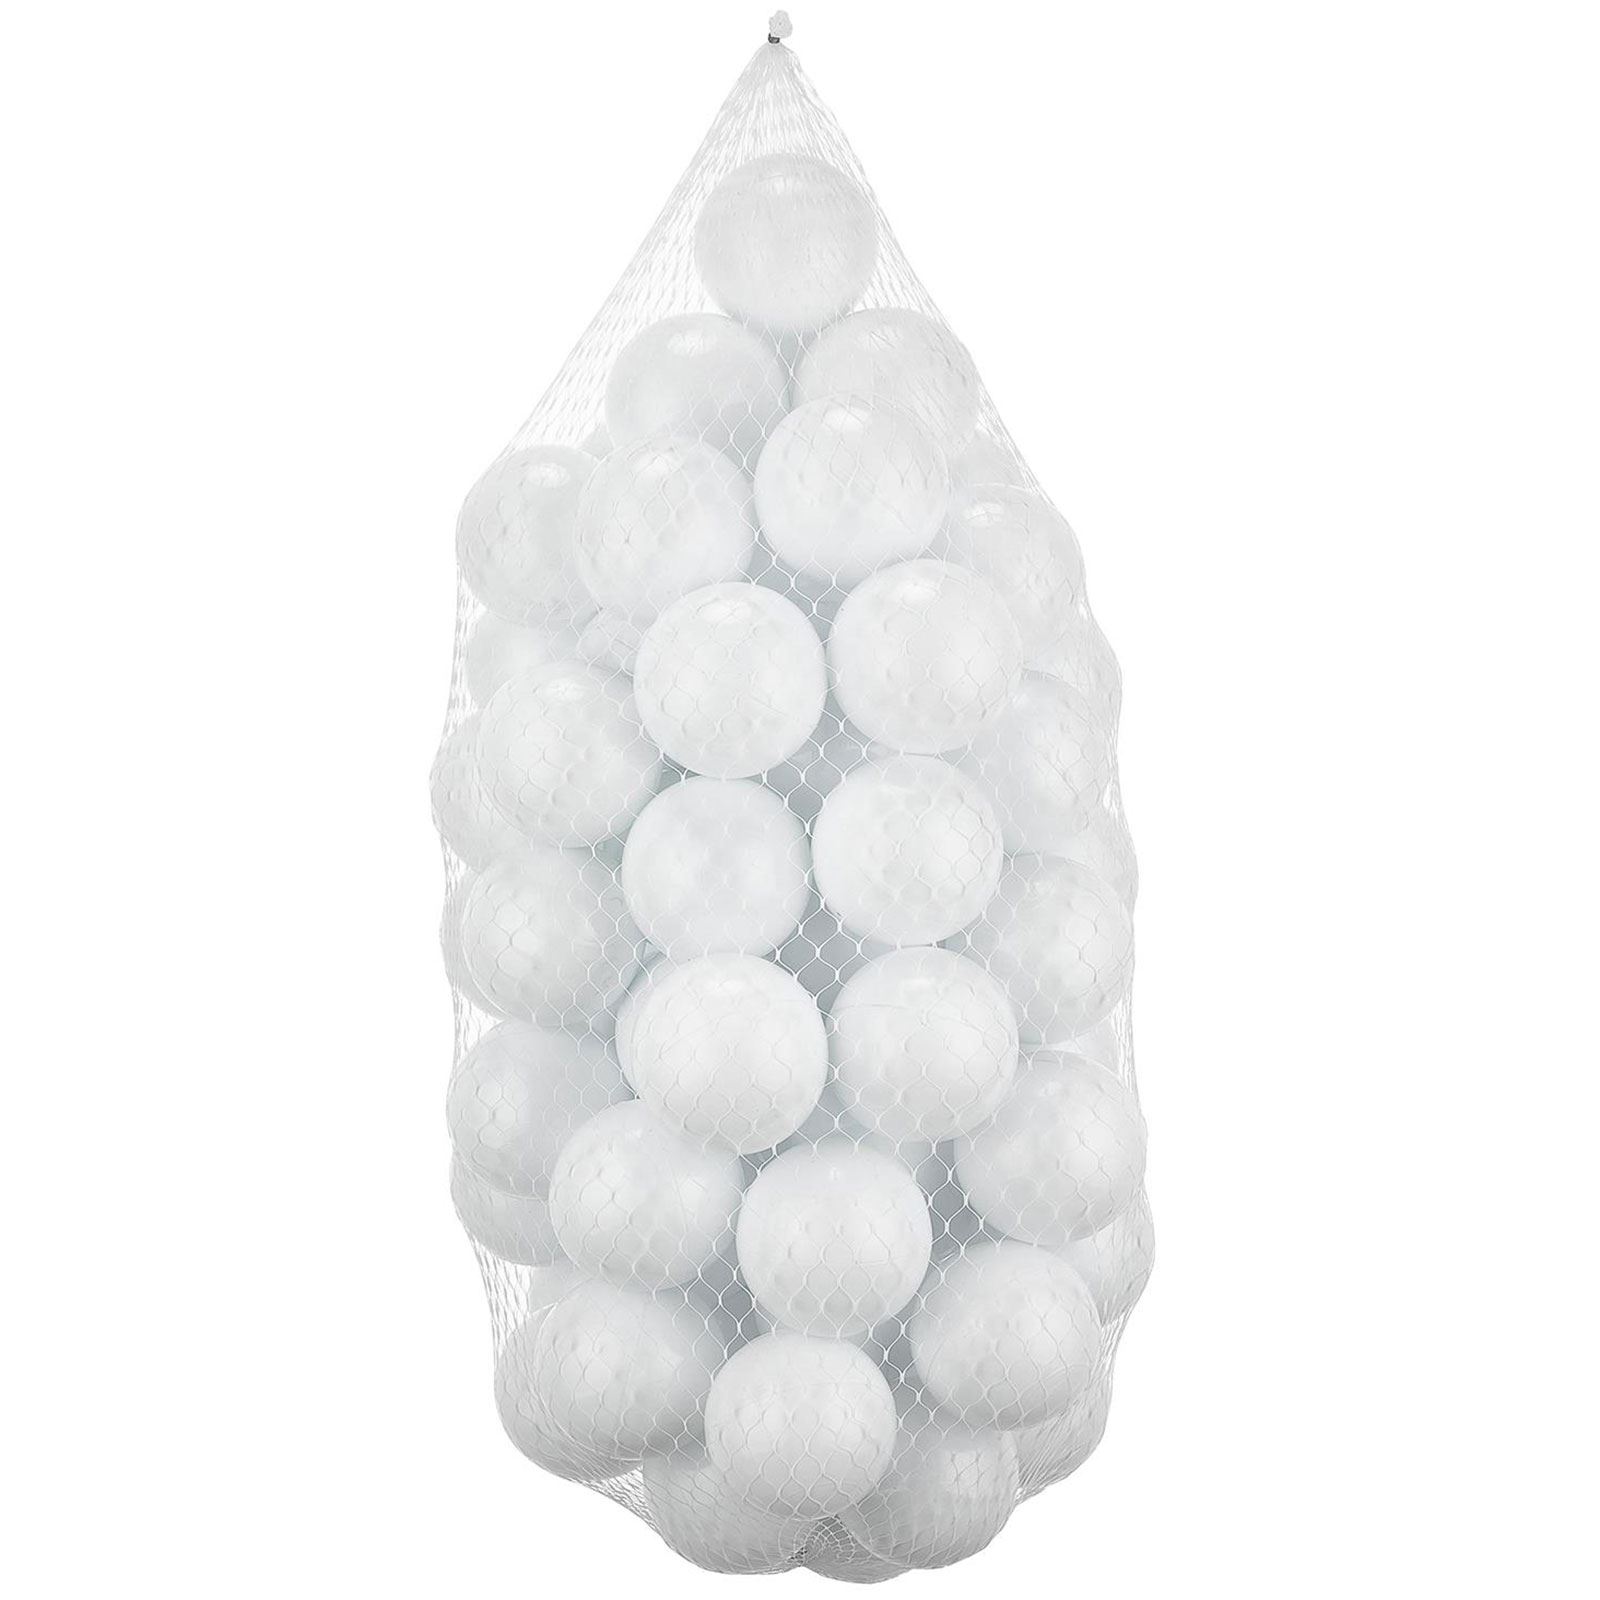 Wellgro Bubble Pops Gri Top Havuzu  ve Havuz Topları Gri/Beyaz/Seffaf/Mint Top